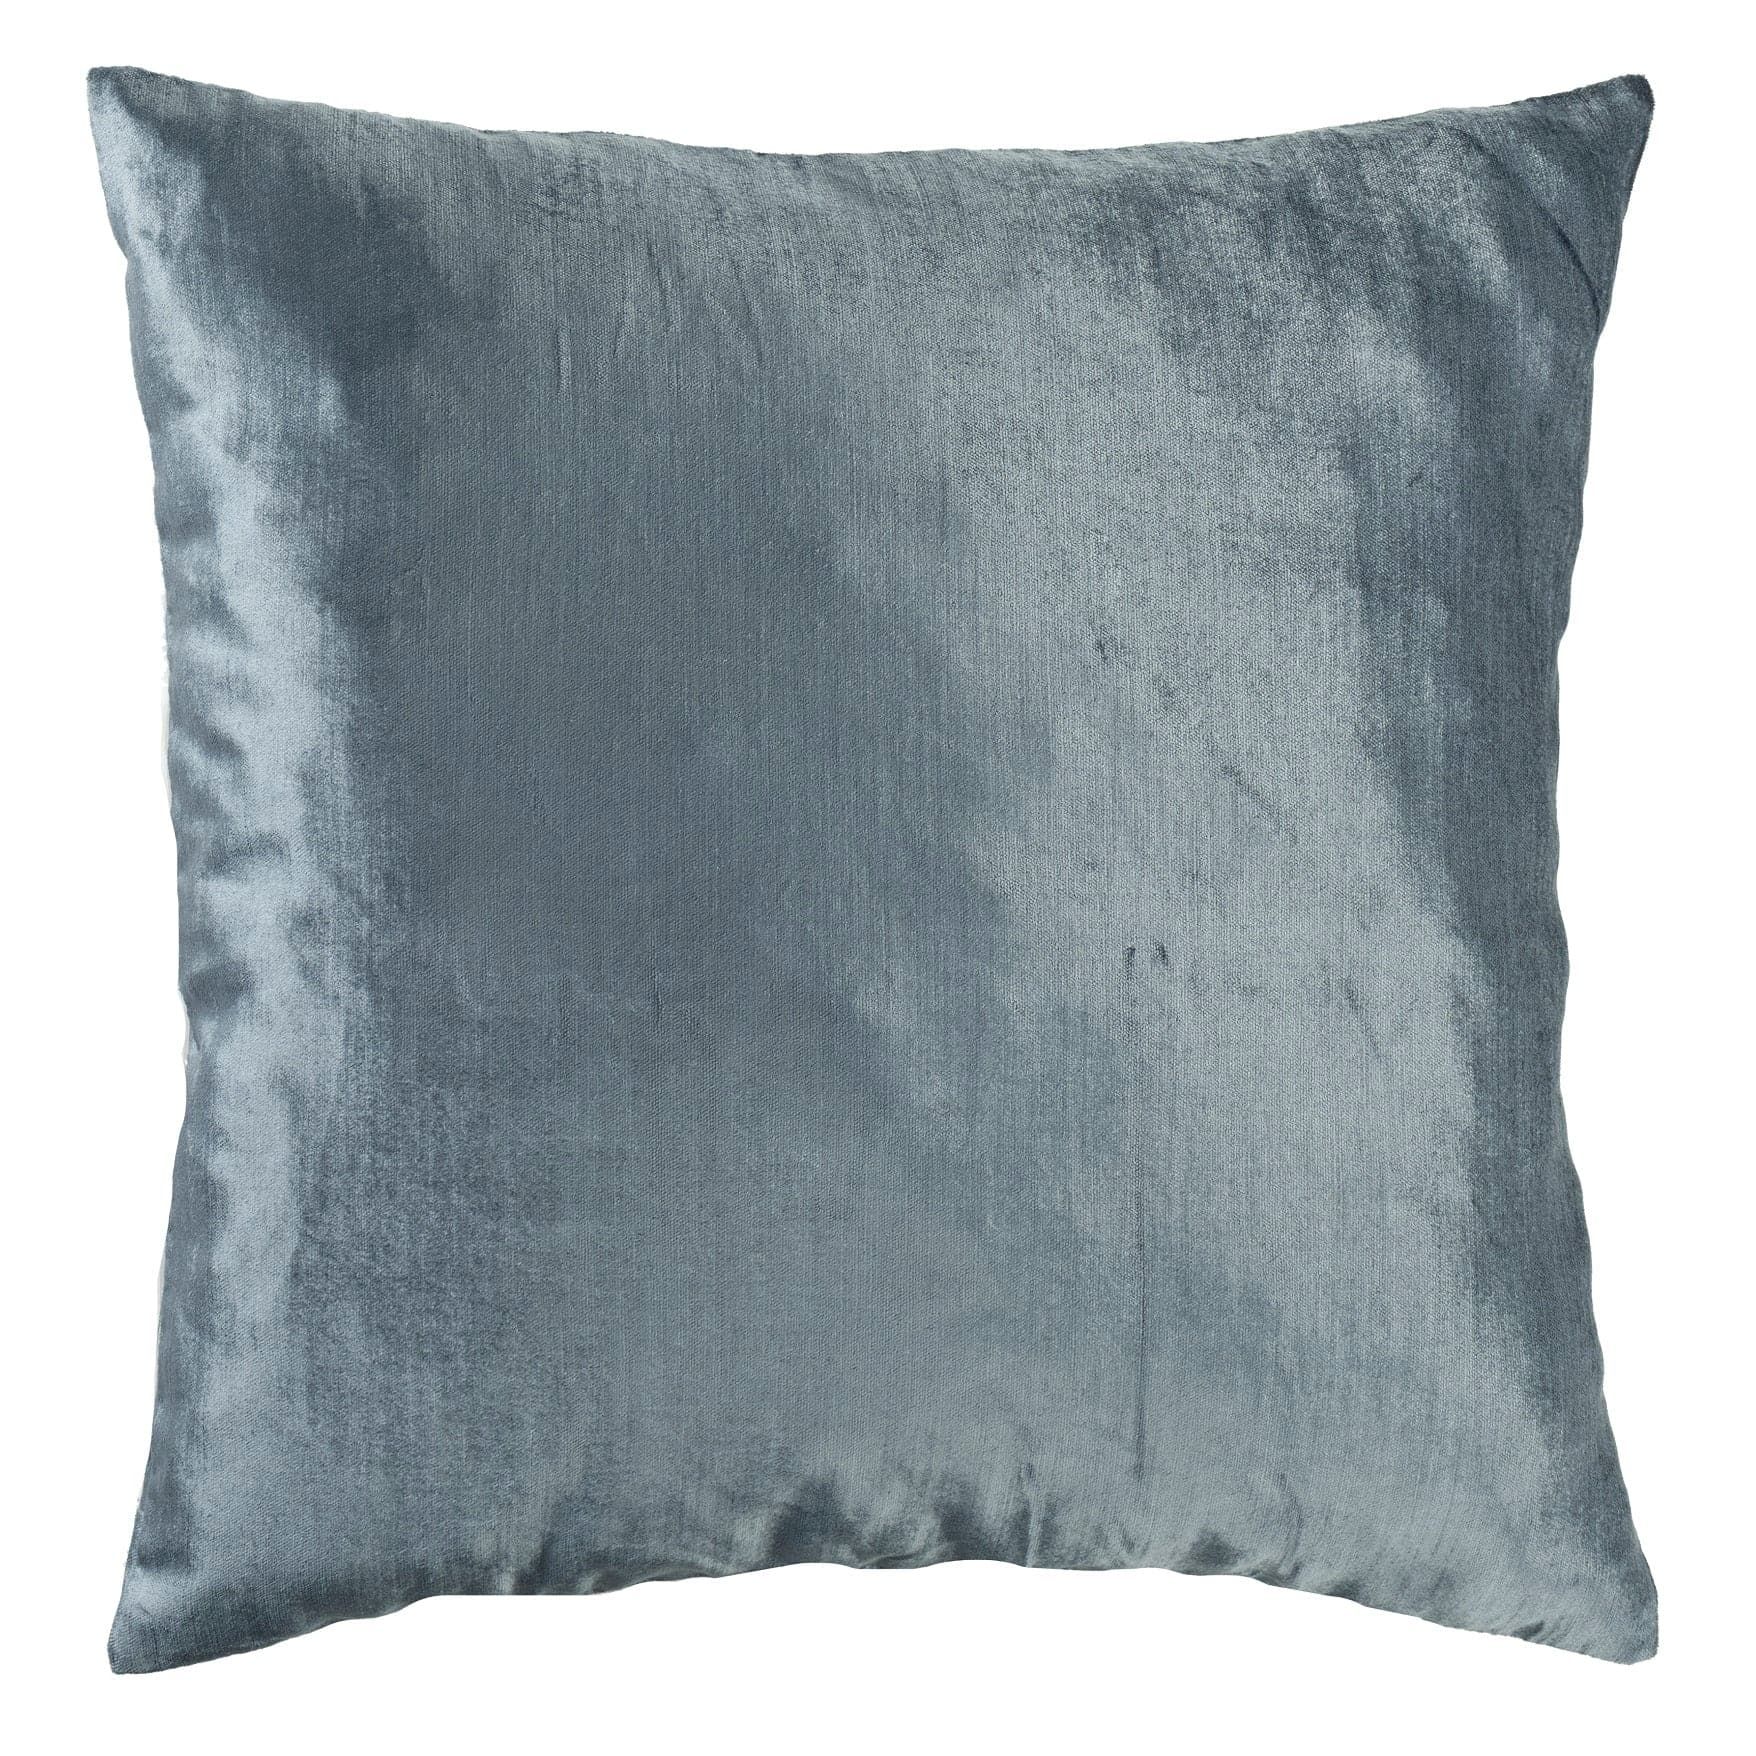 Gracie Gillmore Solid Decorative Pillow | Lush Decor